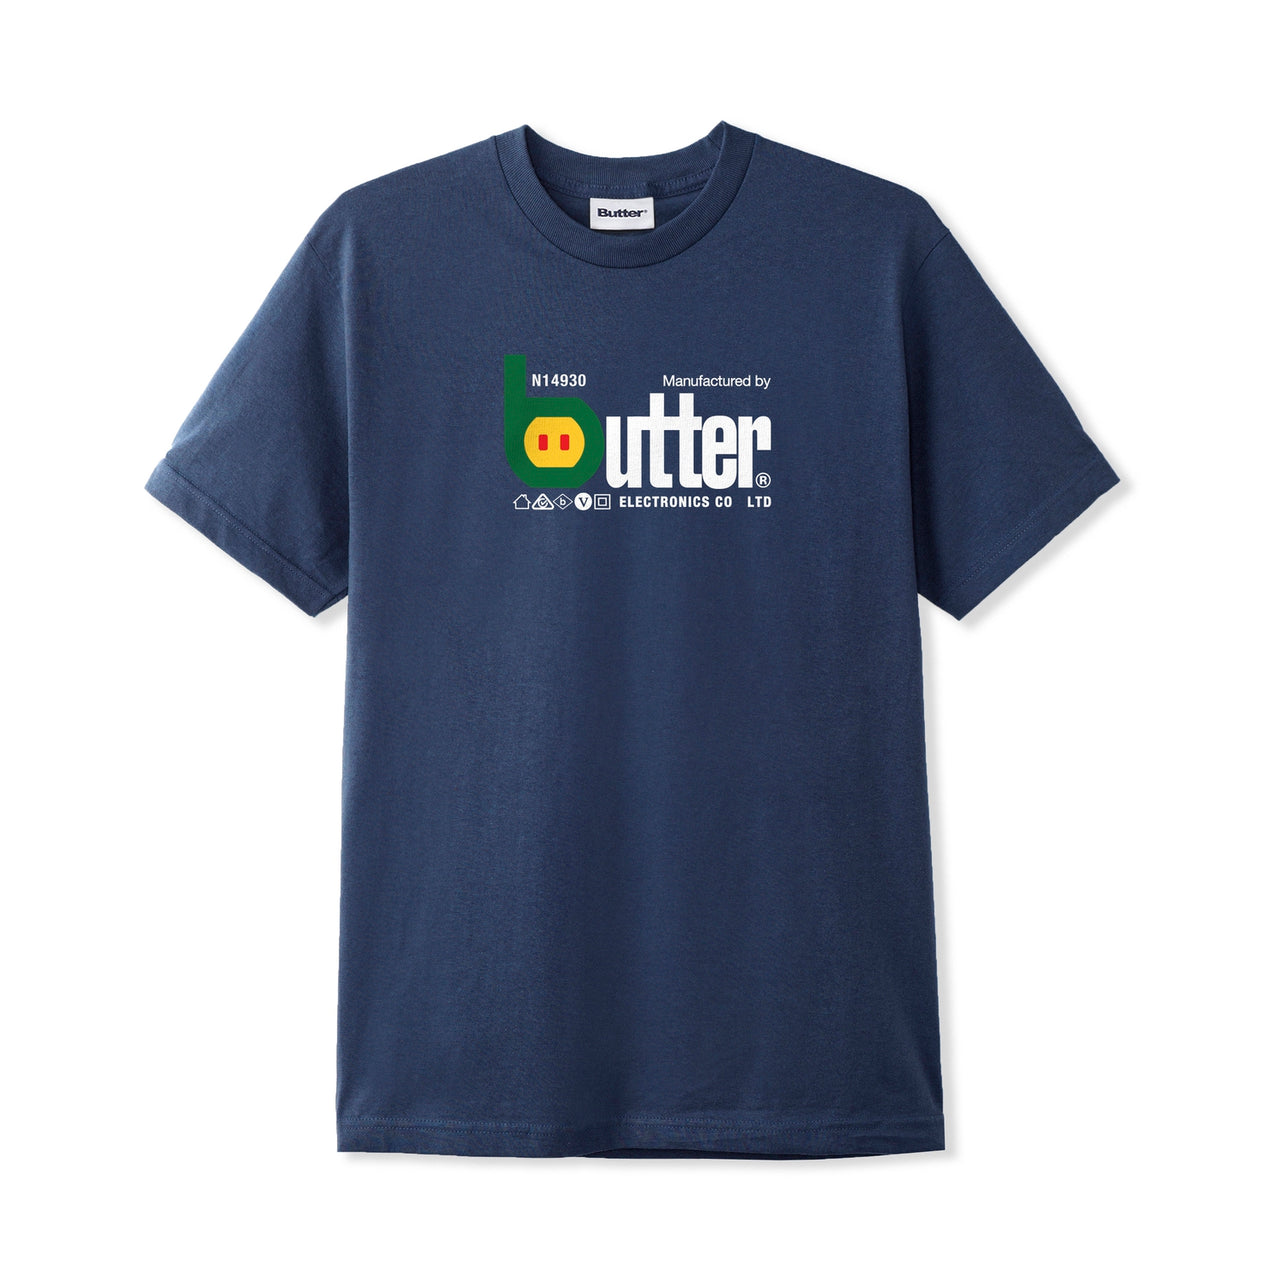 Butter Electronics T-Shirt - Denim